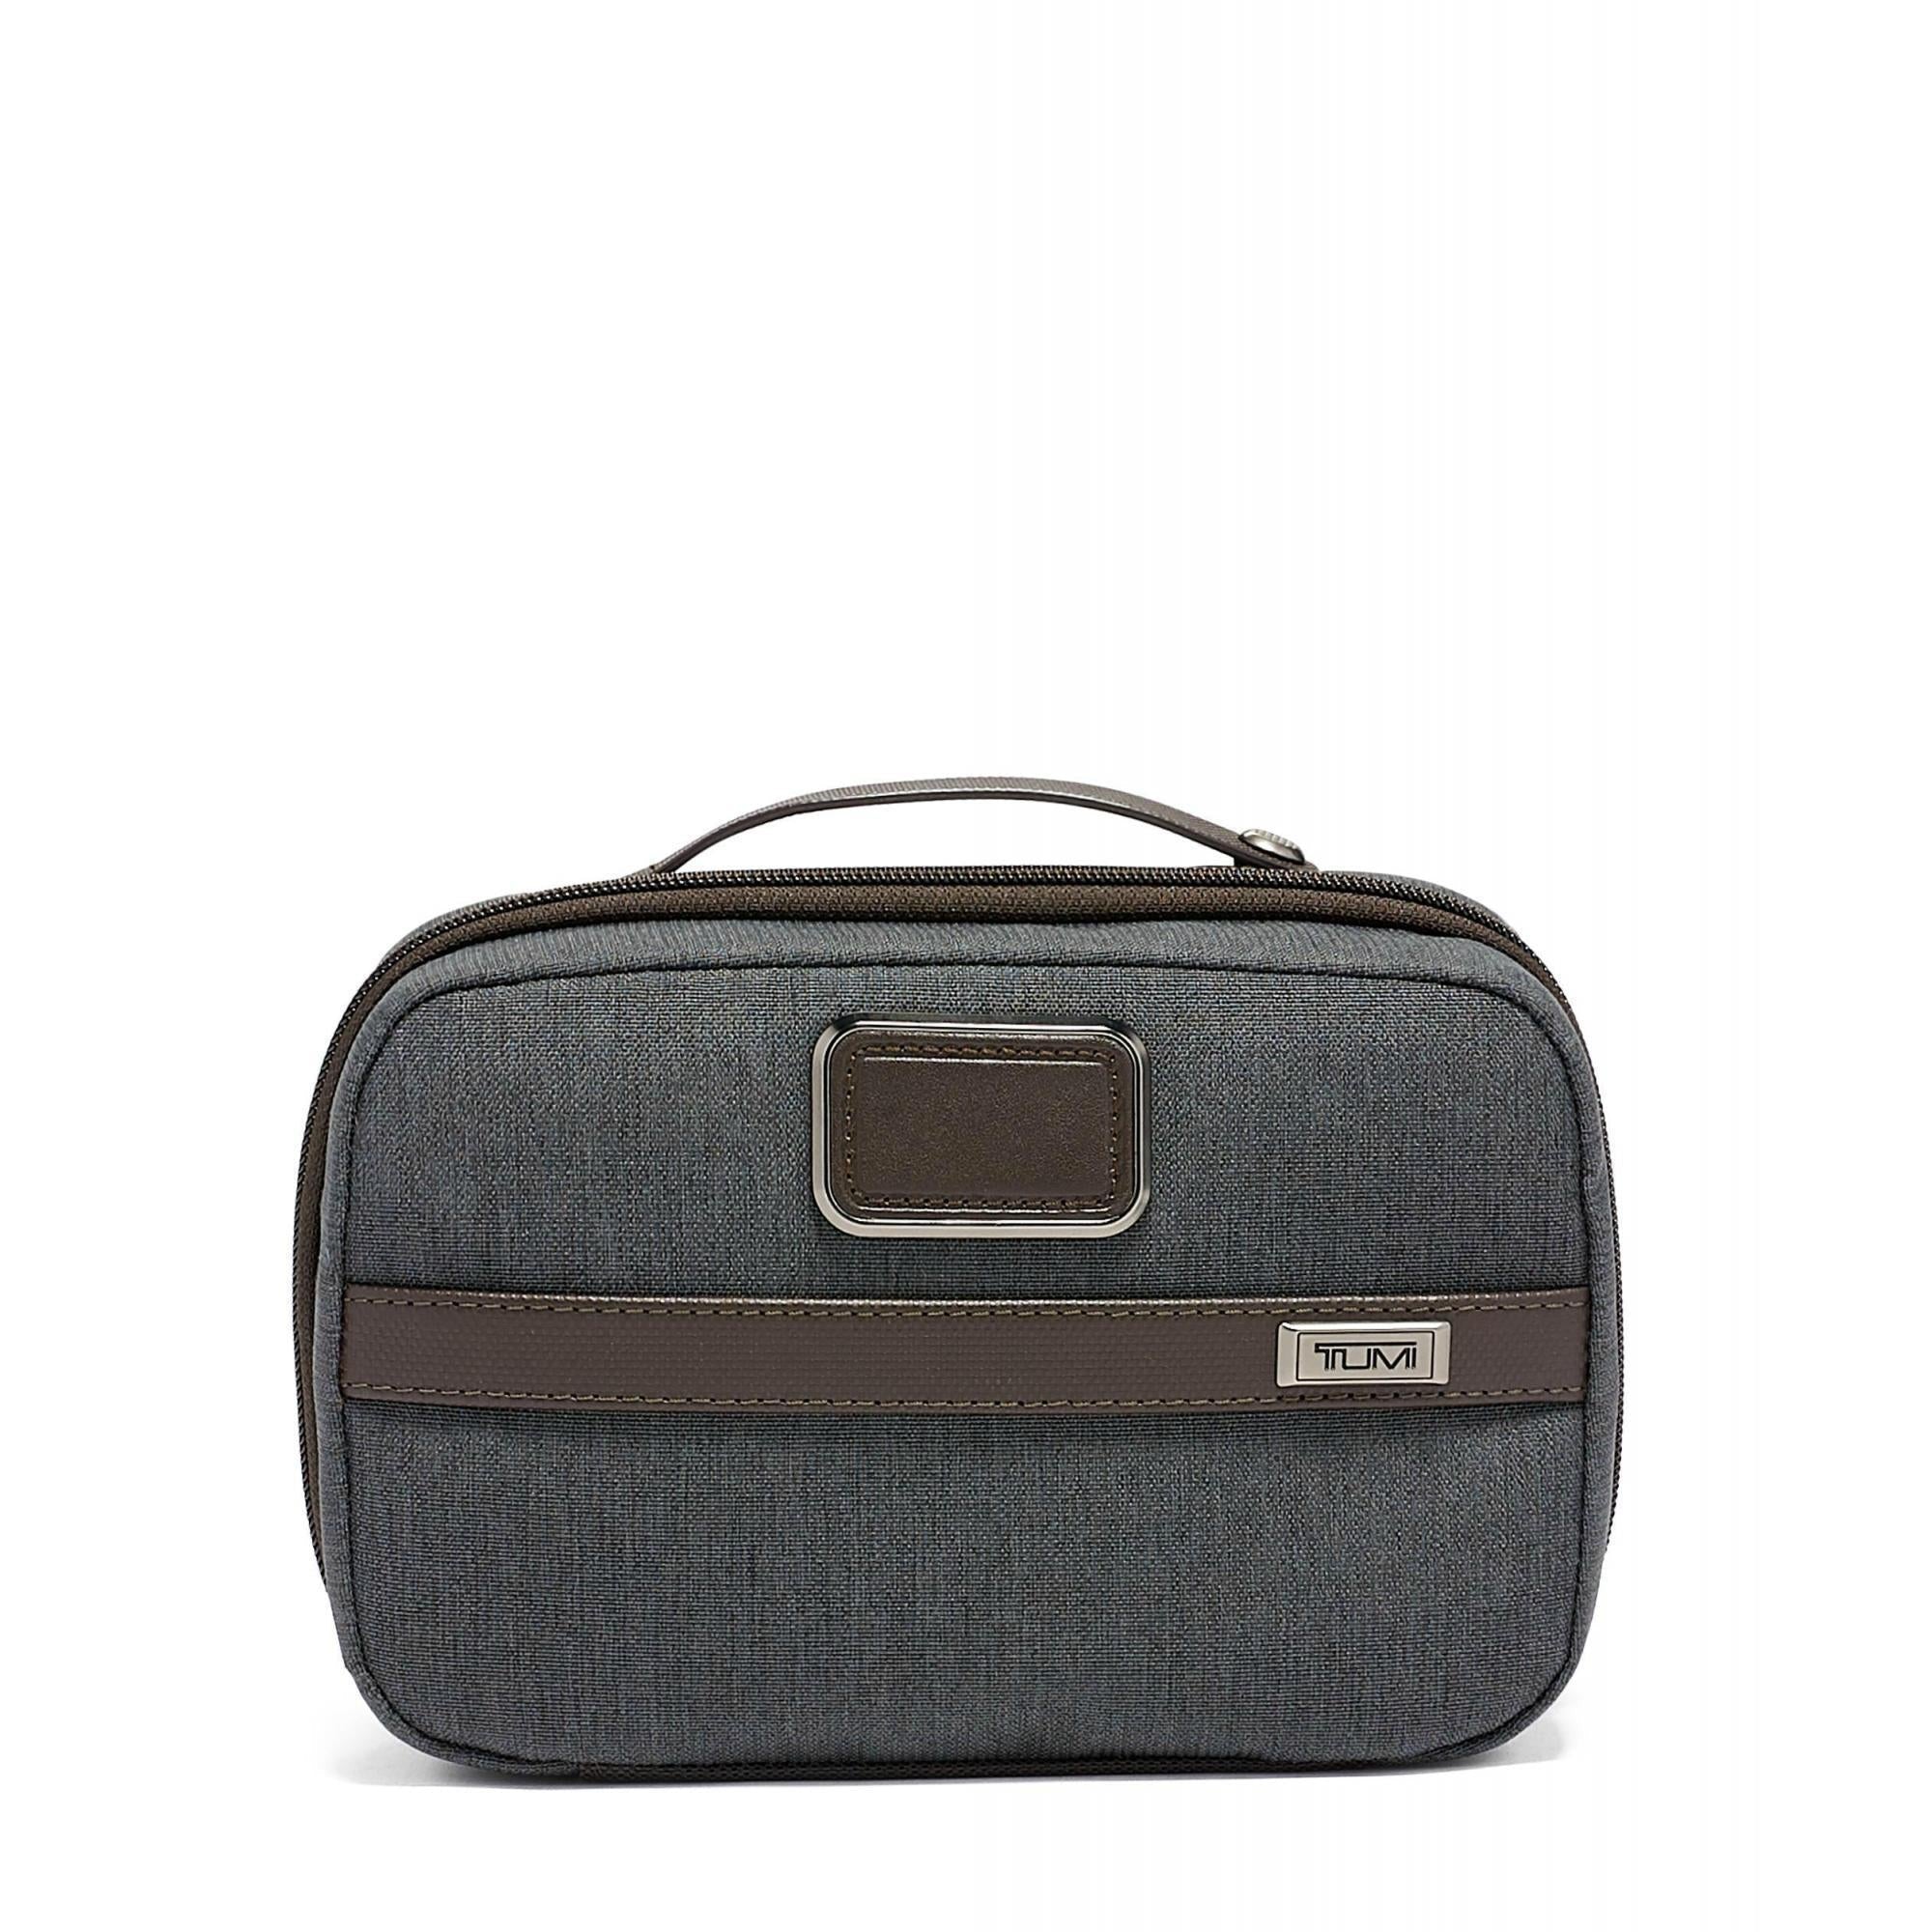 TUMI 3 Travel Kit – Luggage Pros